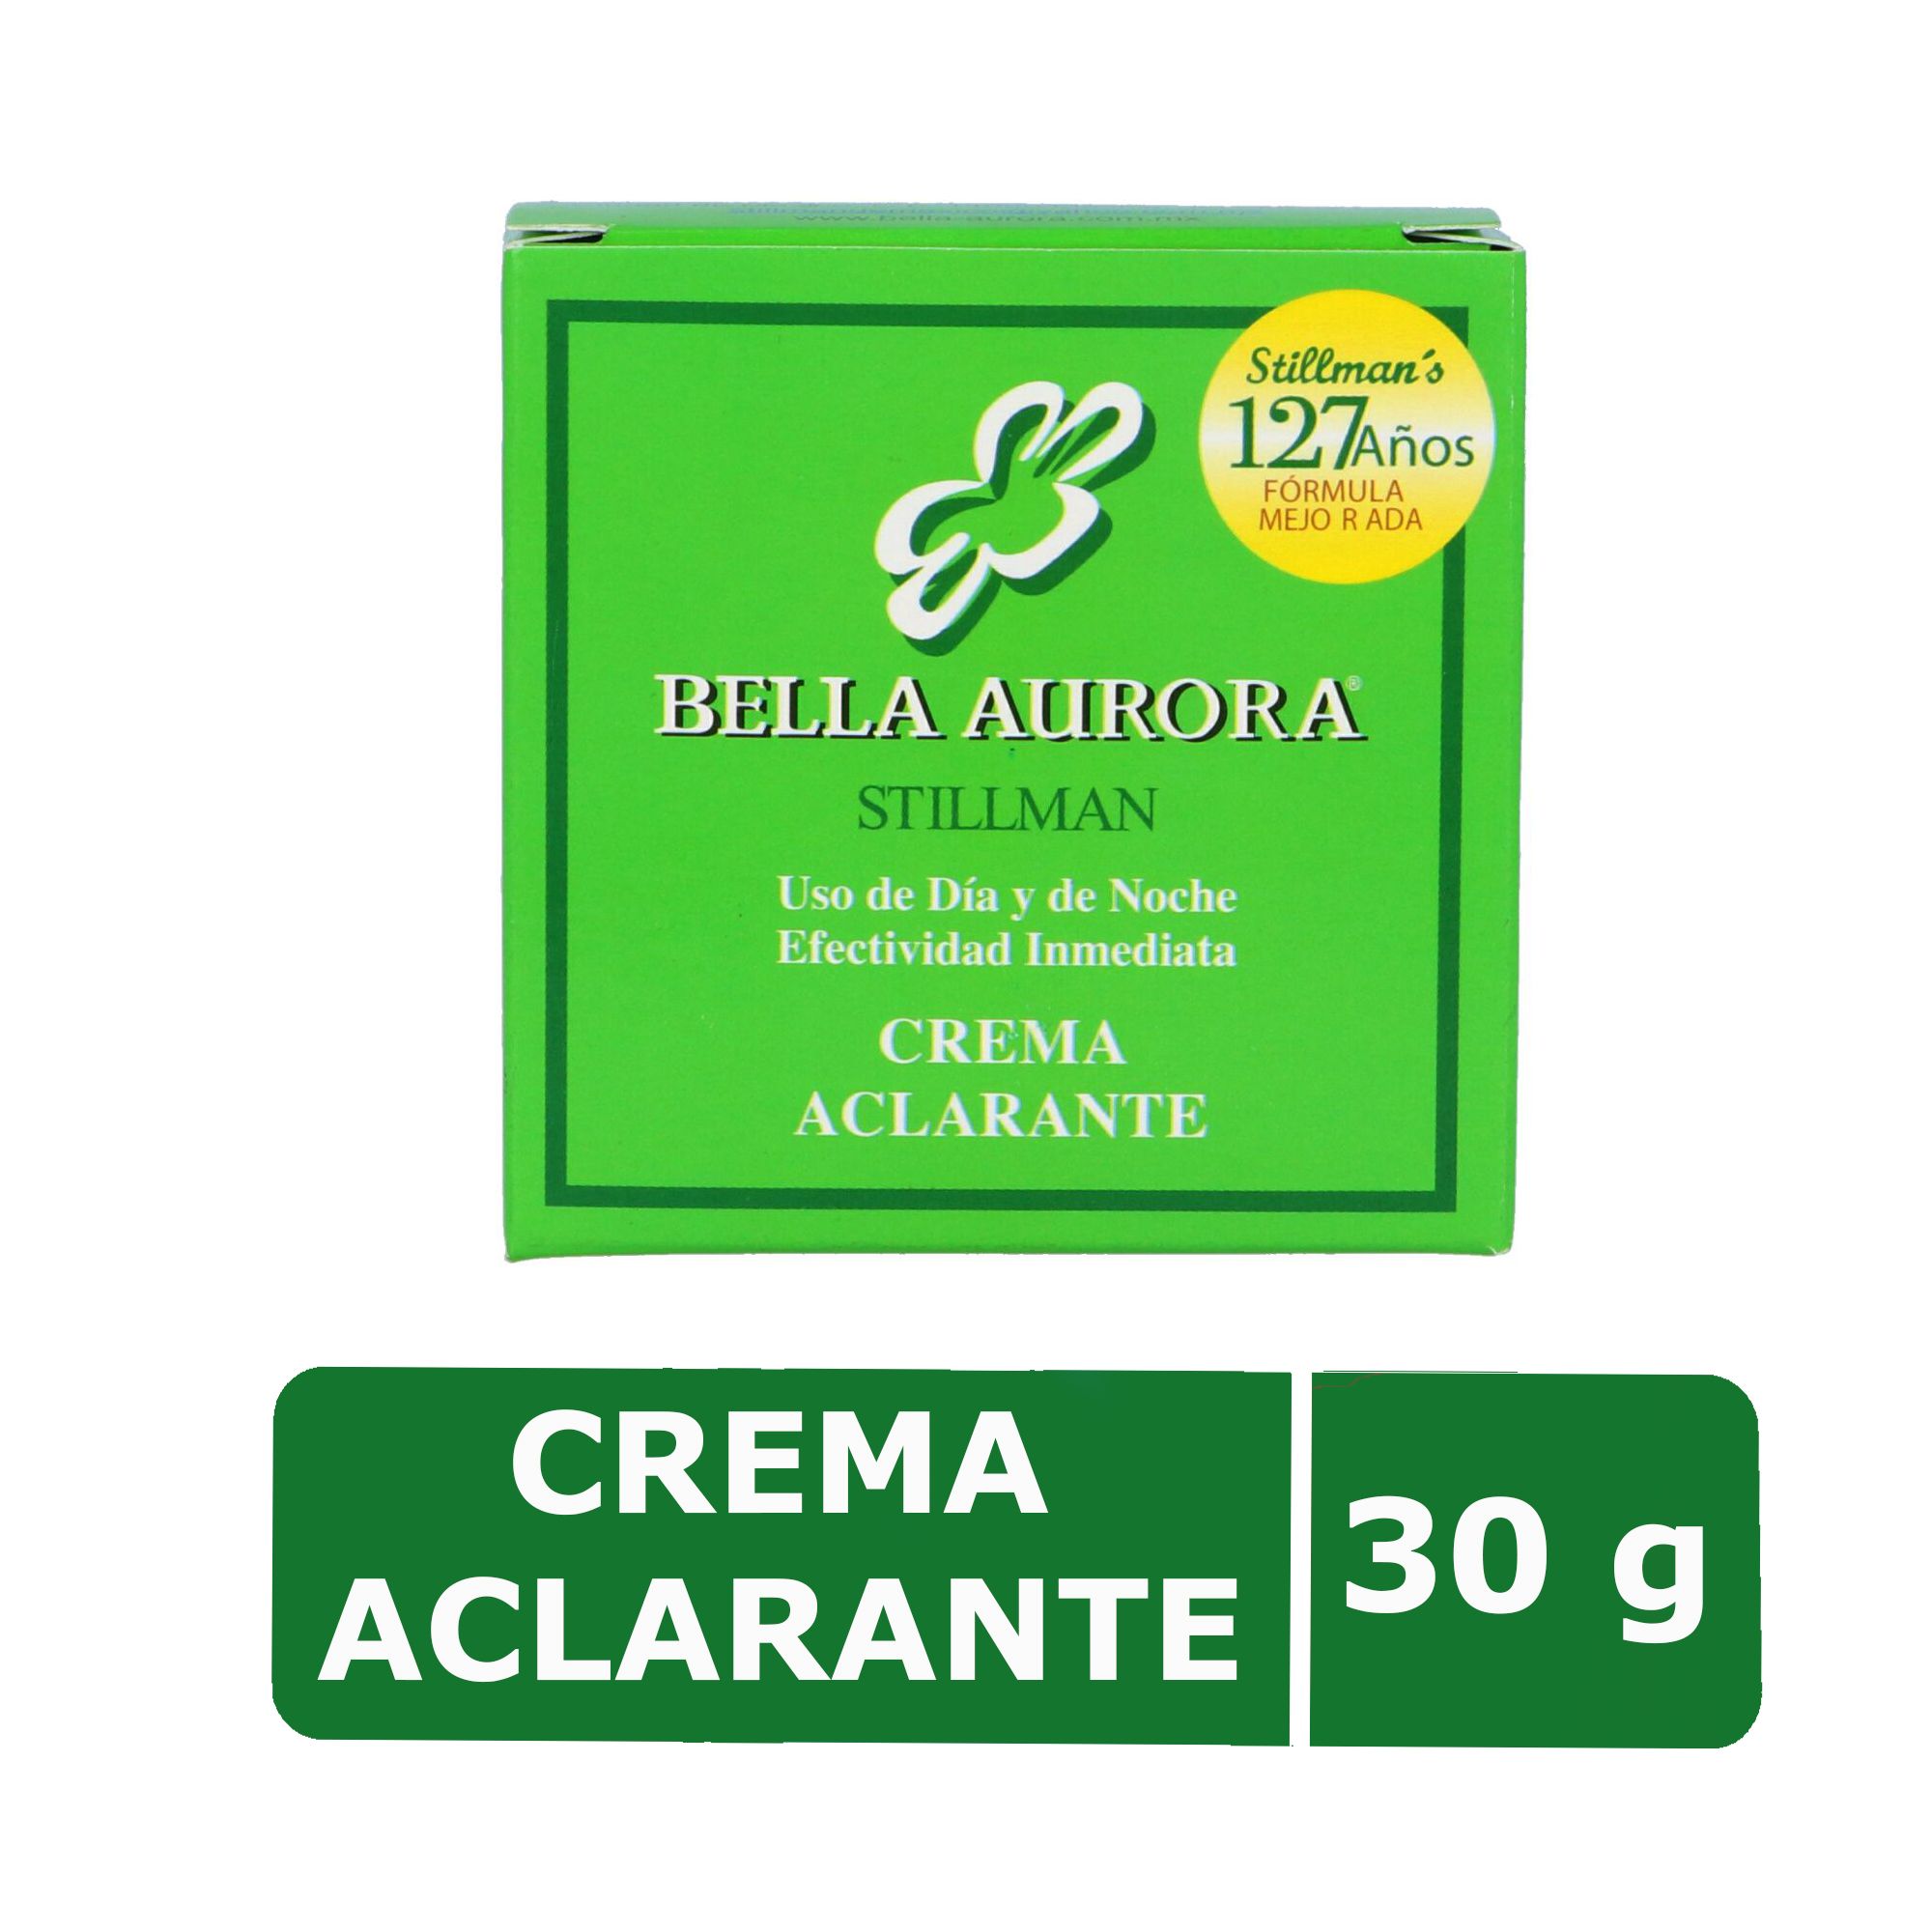 Precio Crema aclarante Bella Aurora Stillman 30 mL | Farmalisto MX